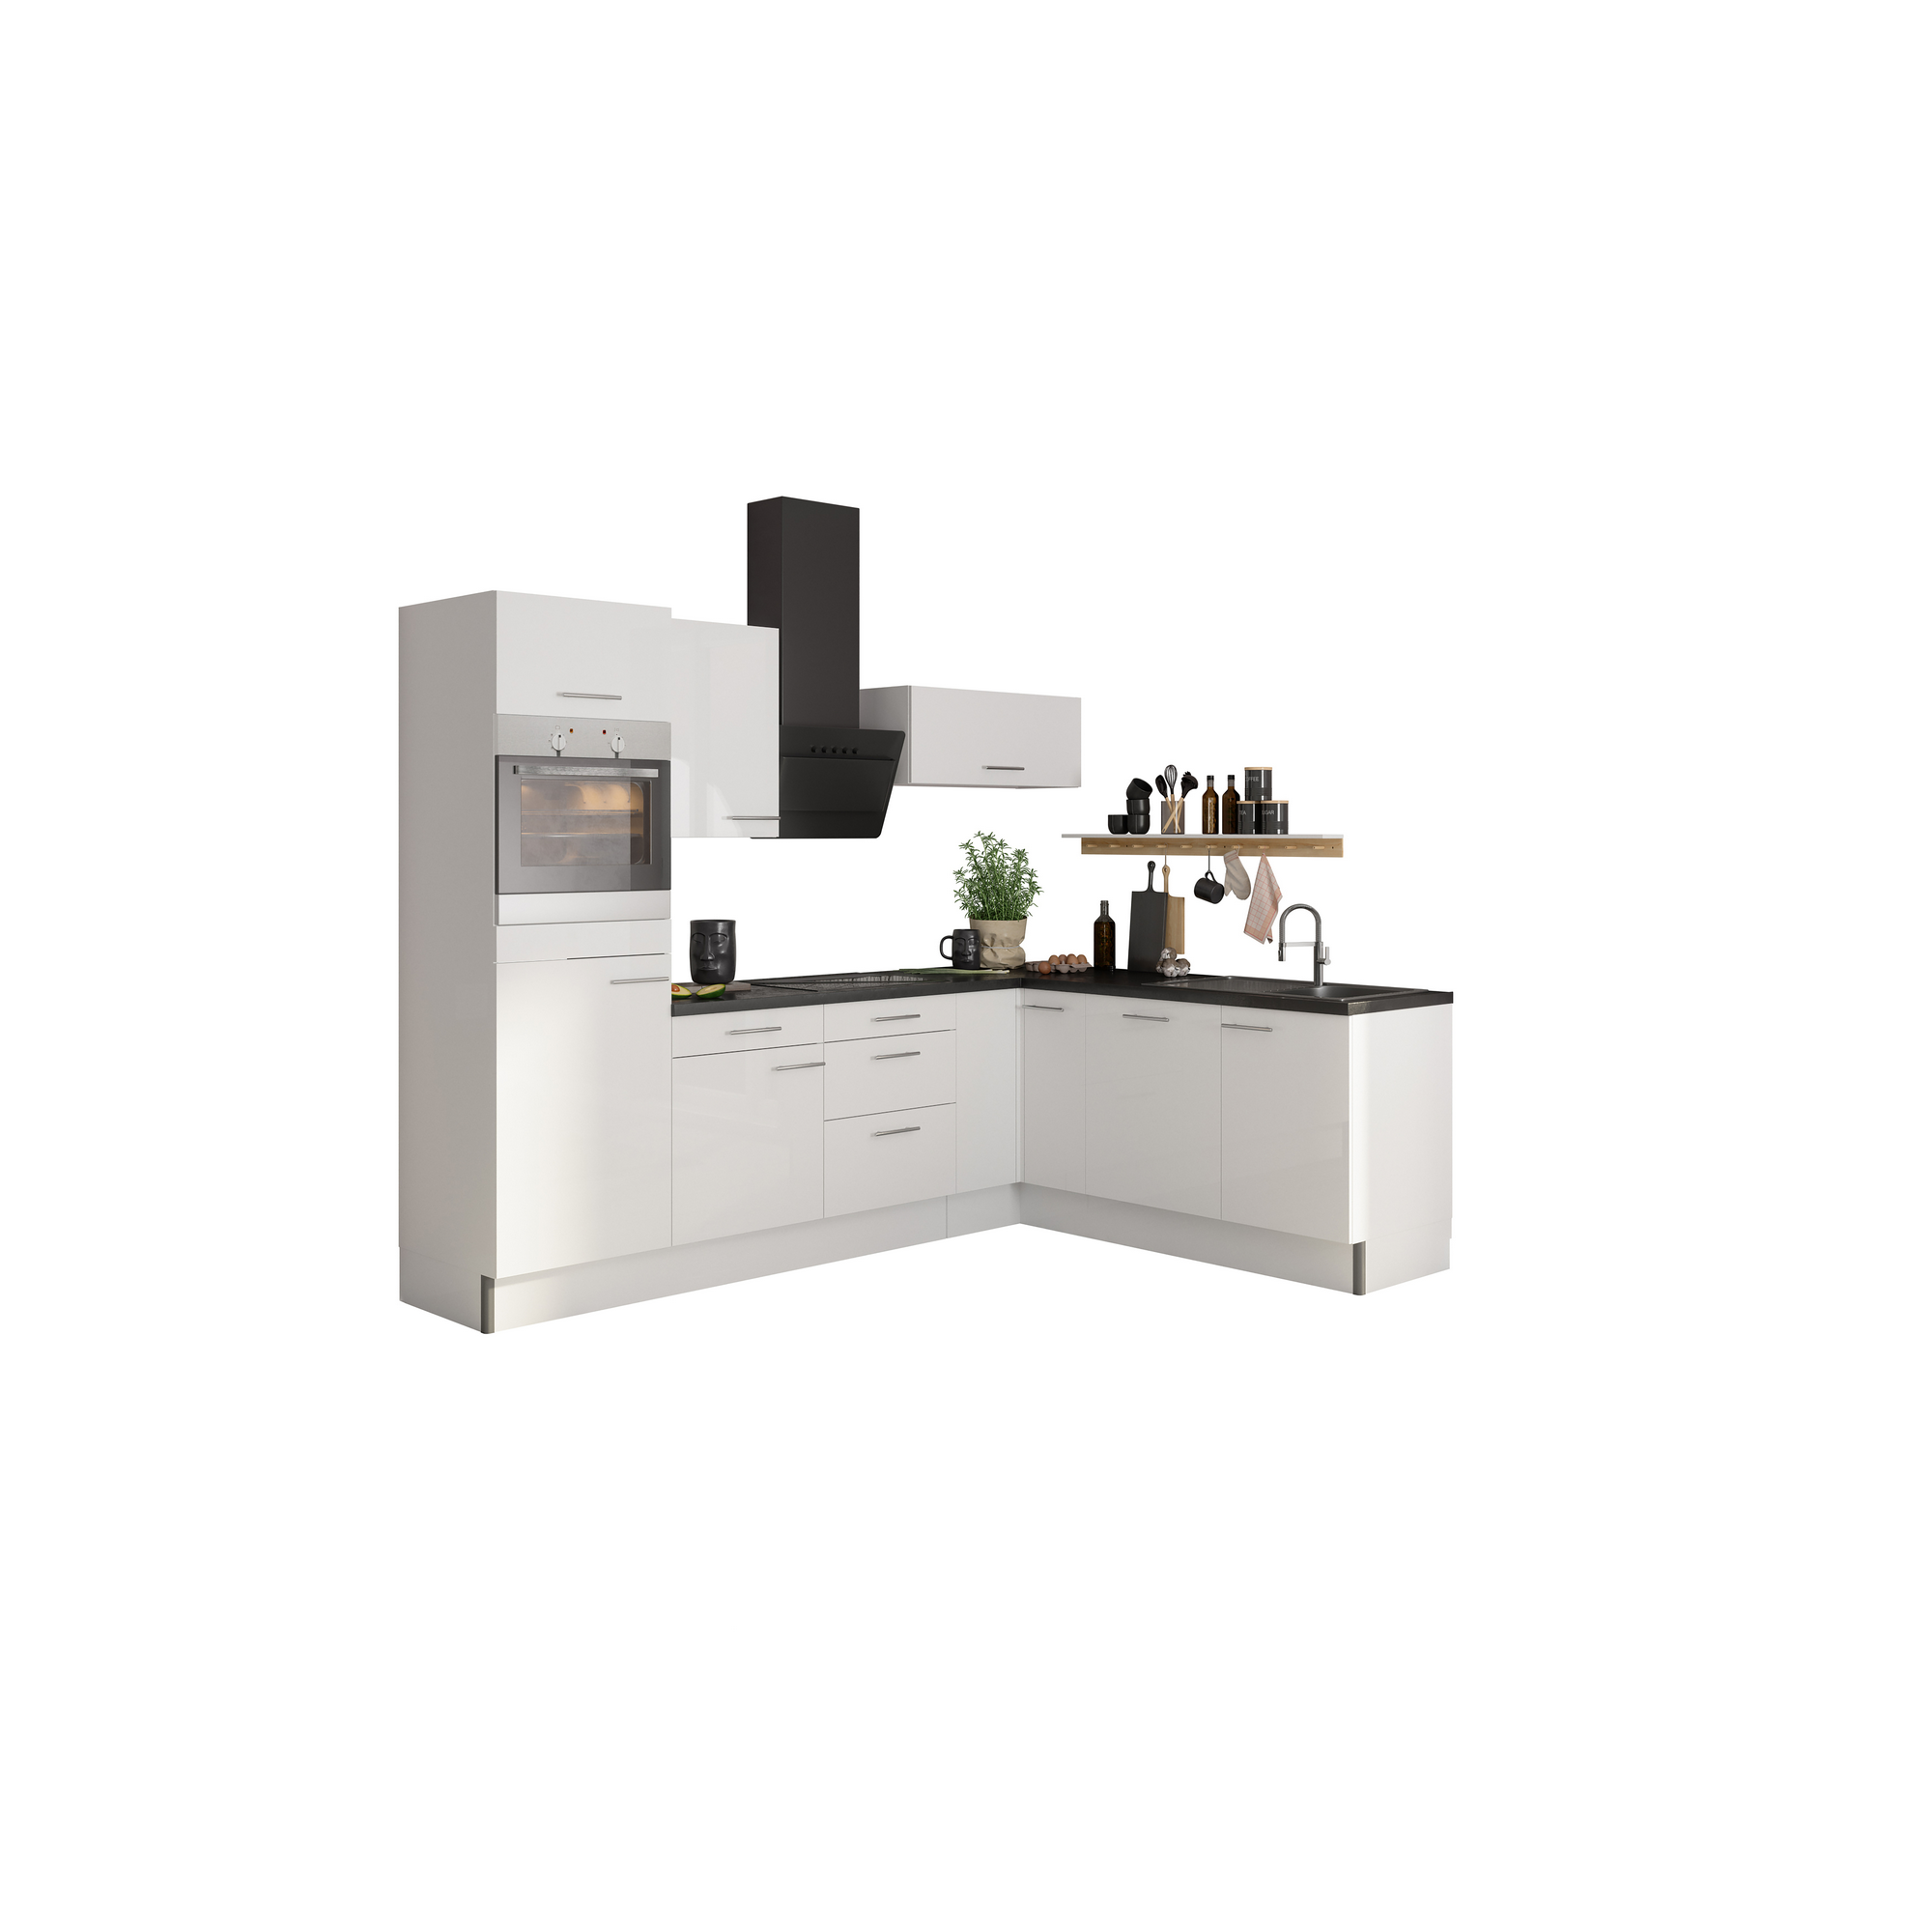 Winkelküche mit E-Geräten 'OPTIkoncept Rurik986' weiß 270 cm + product picture